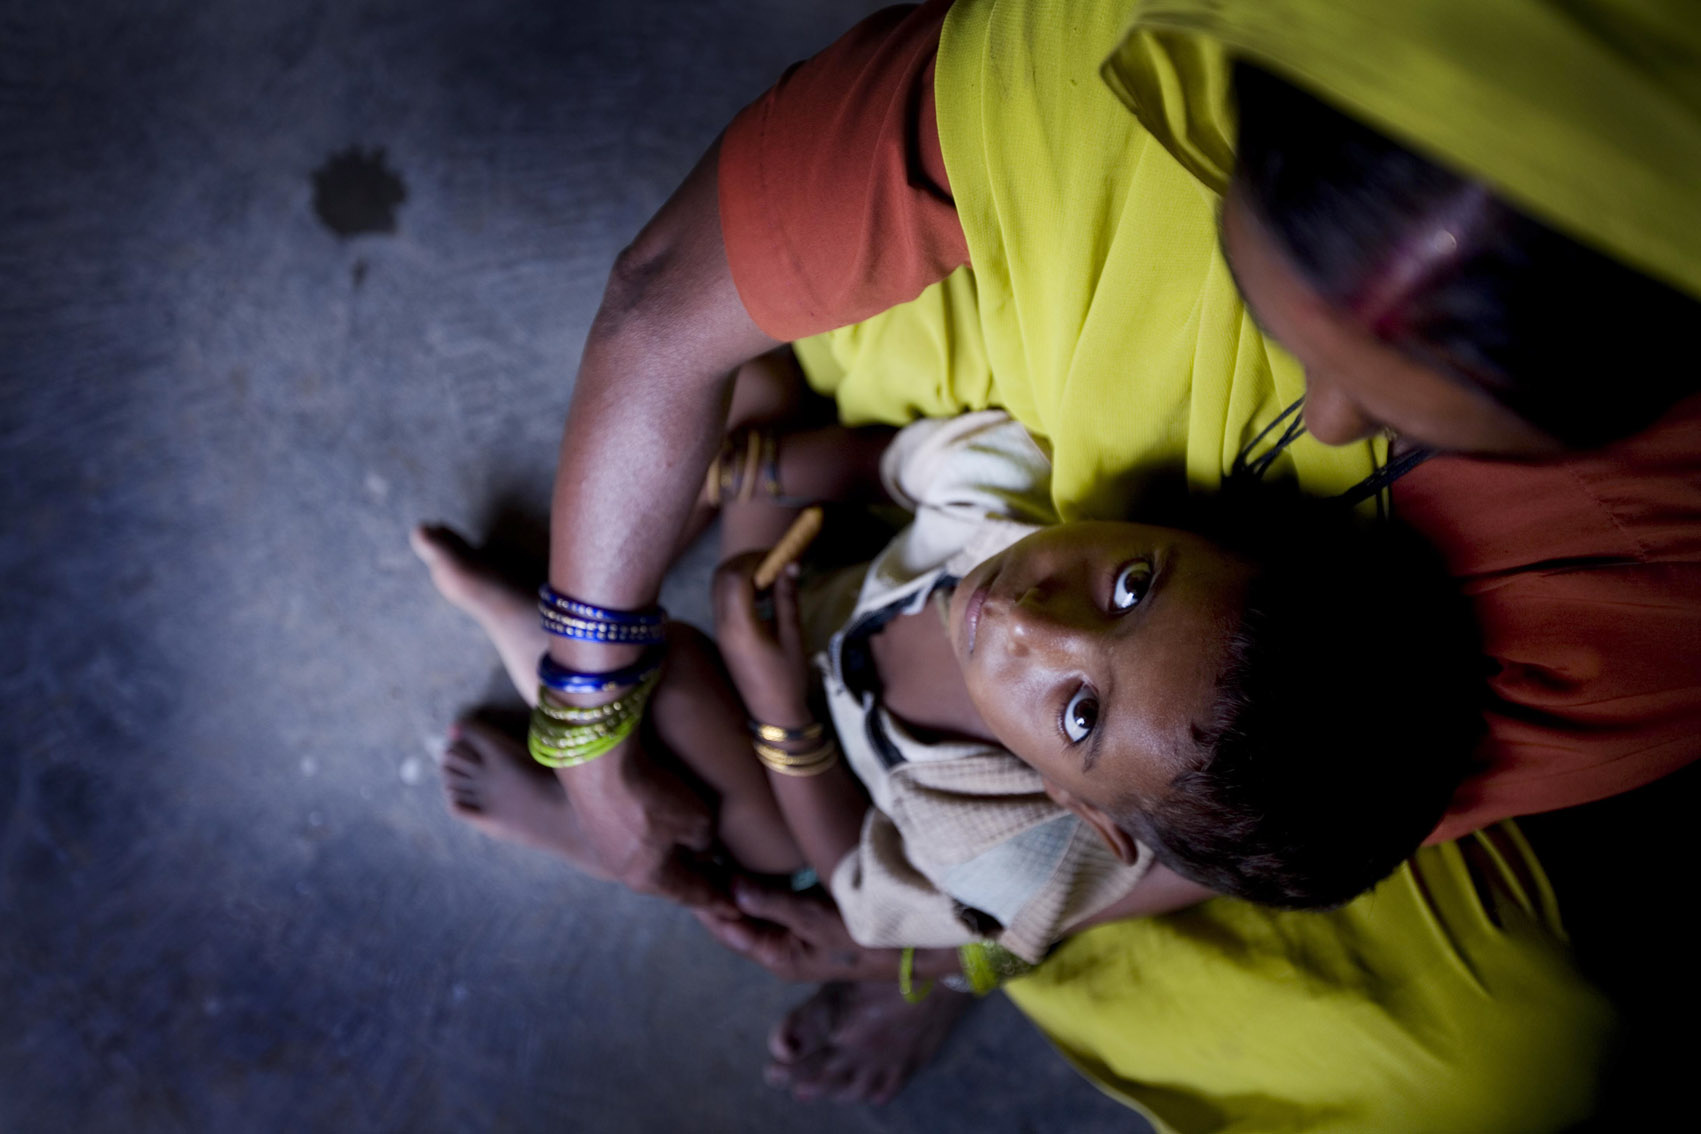 महोत्तरी जिल्लामा सात हजार भन्दा बढी बालबालिका कुपोषणको शिकार